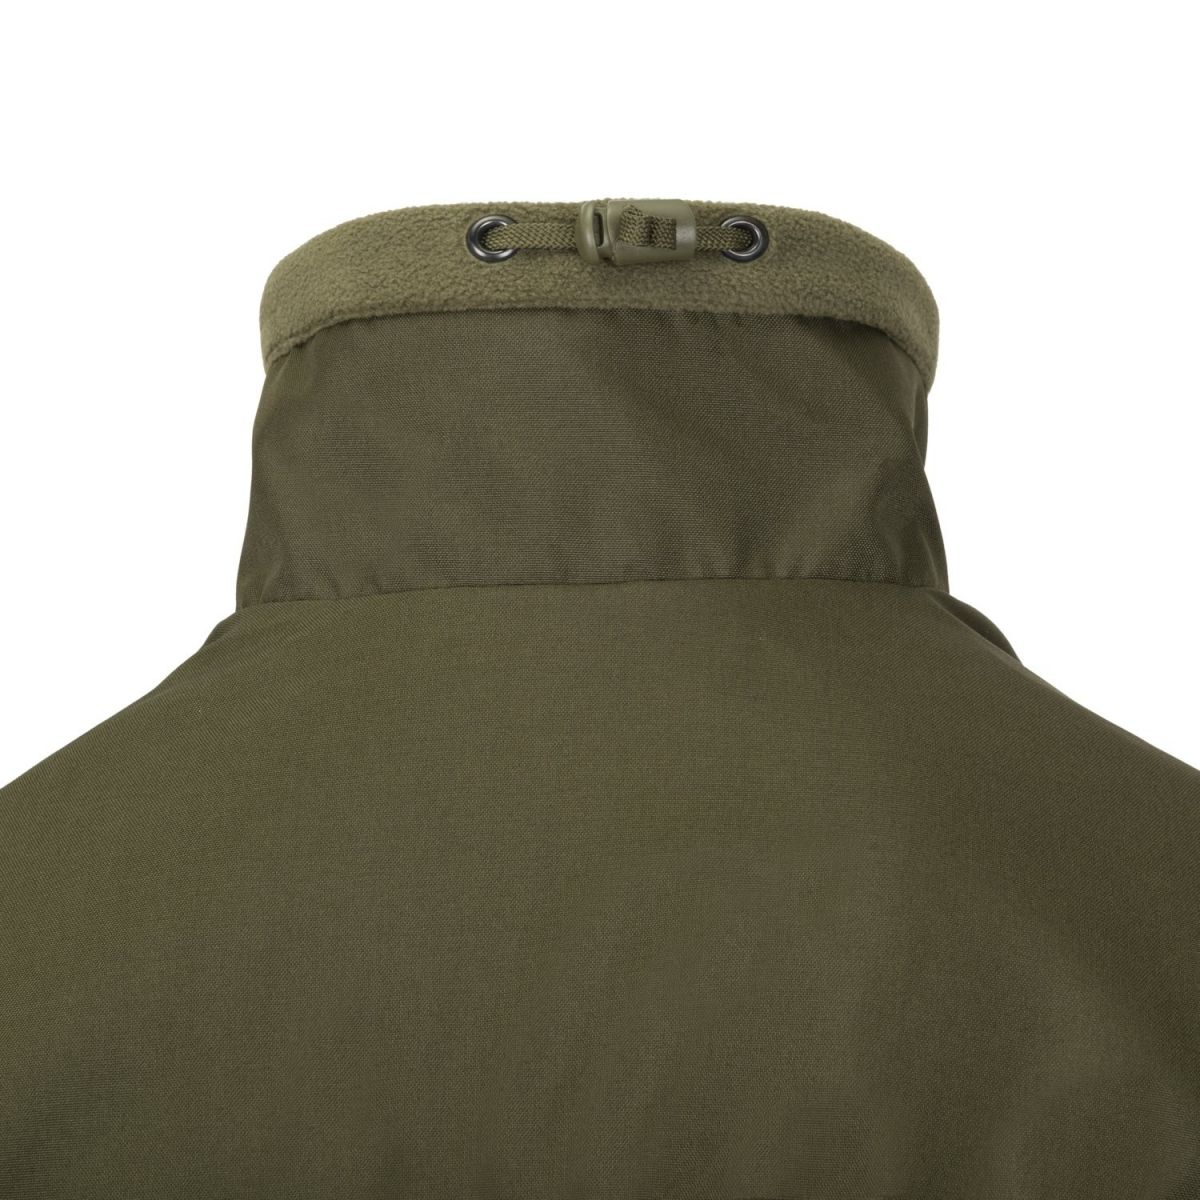 Флісова куртка Helikon-Tex Classic Army. Колір Olive Green / Зелена олива. Розмір L 13